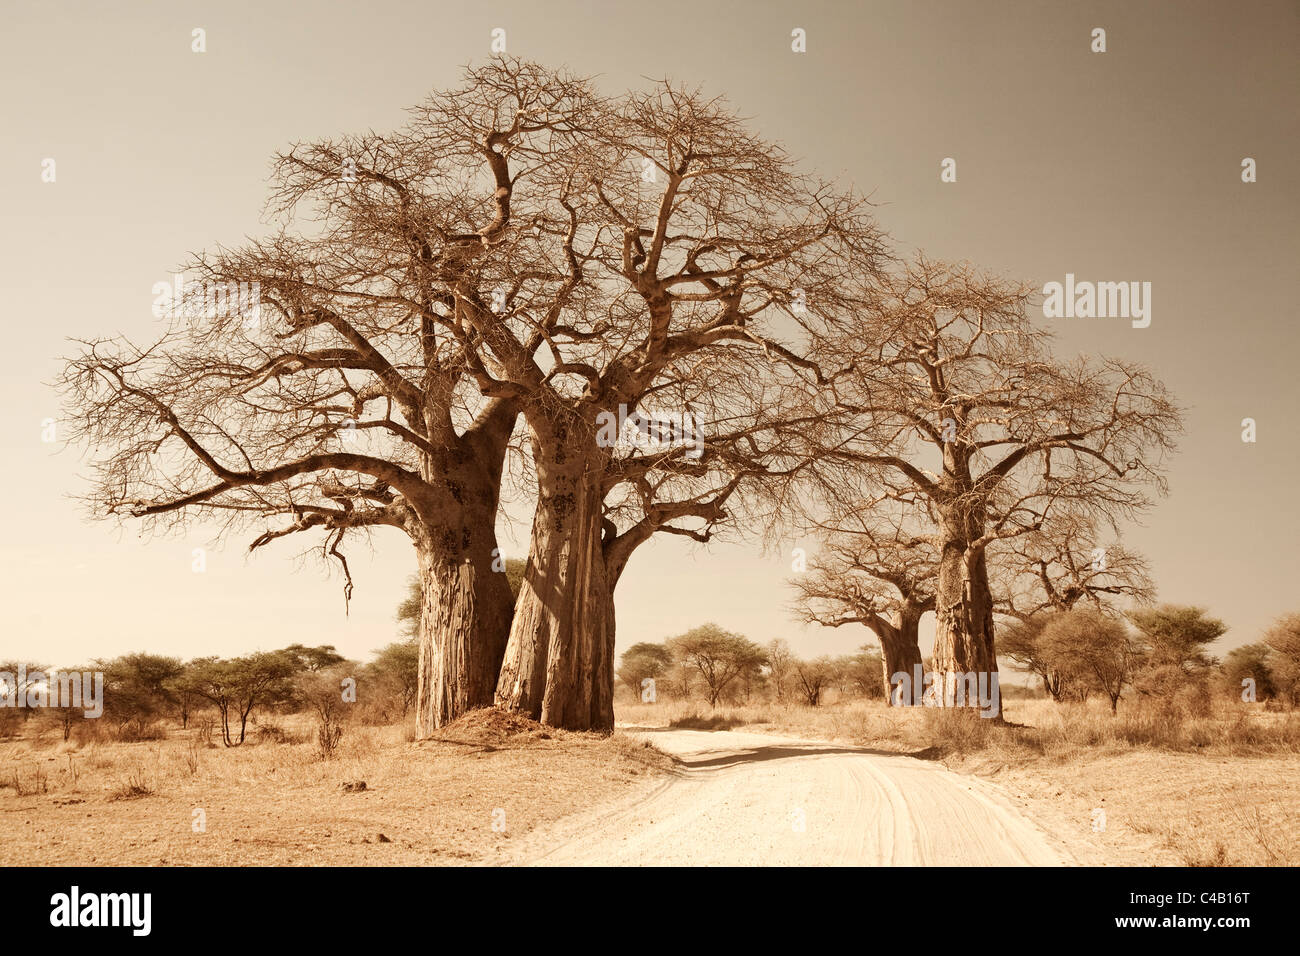 La Tanzanie, Tarangire. Une route passe sous les branches d'énormes baobabs, pour ce qui est de Tarangire célèbre. Banque D'Images